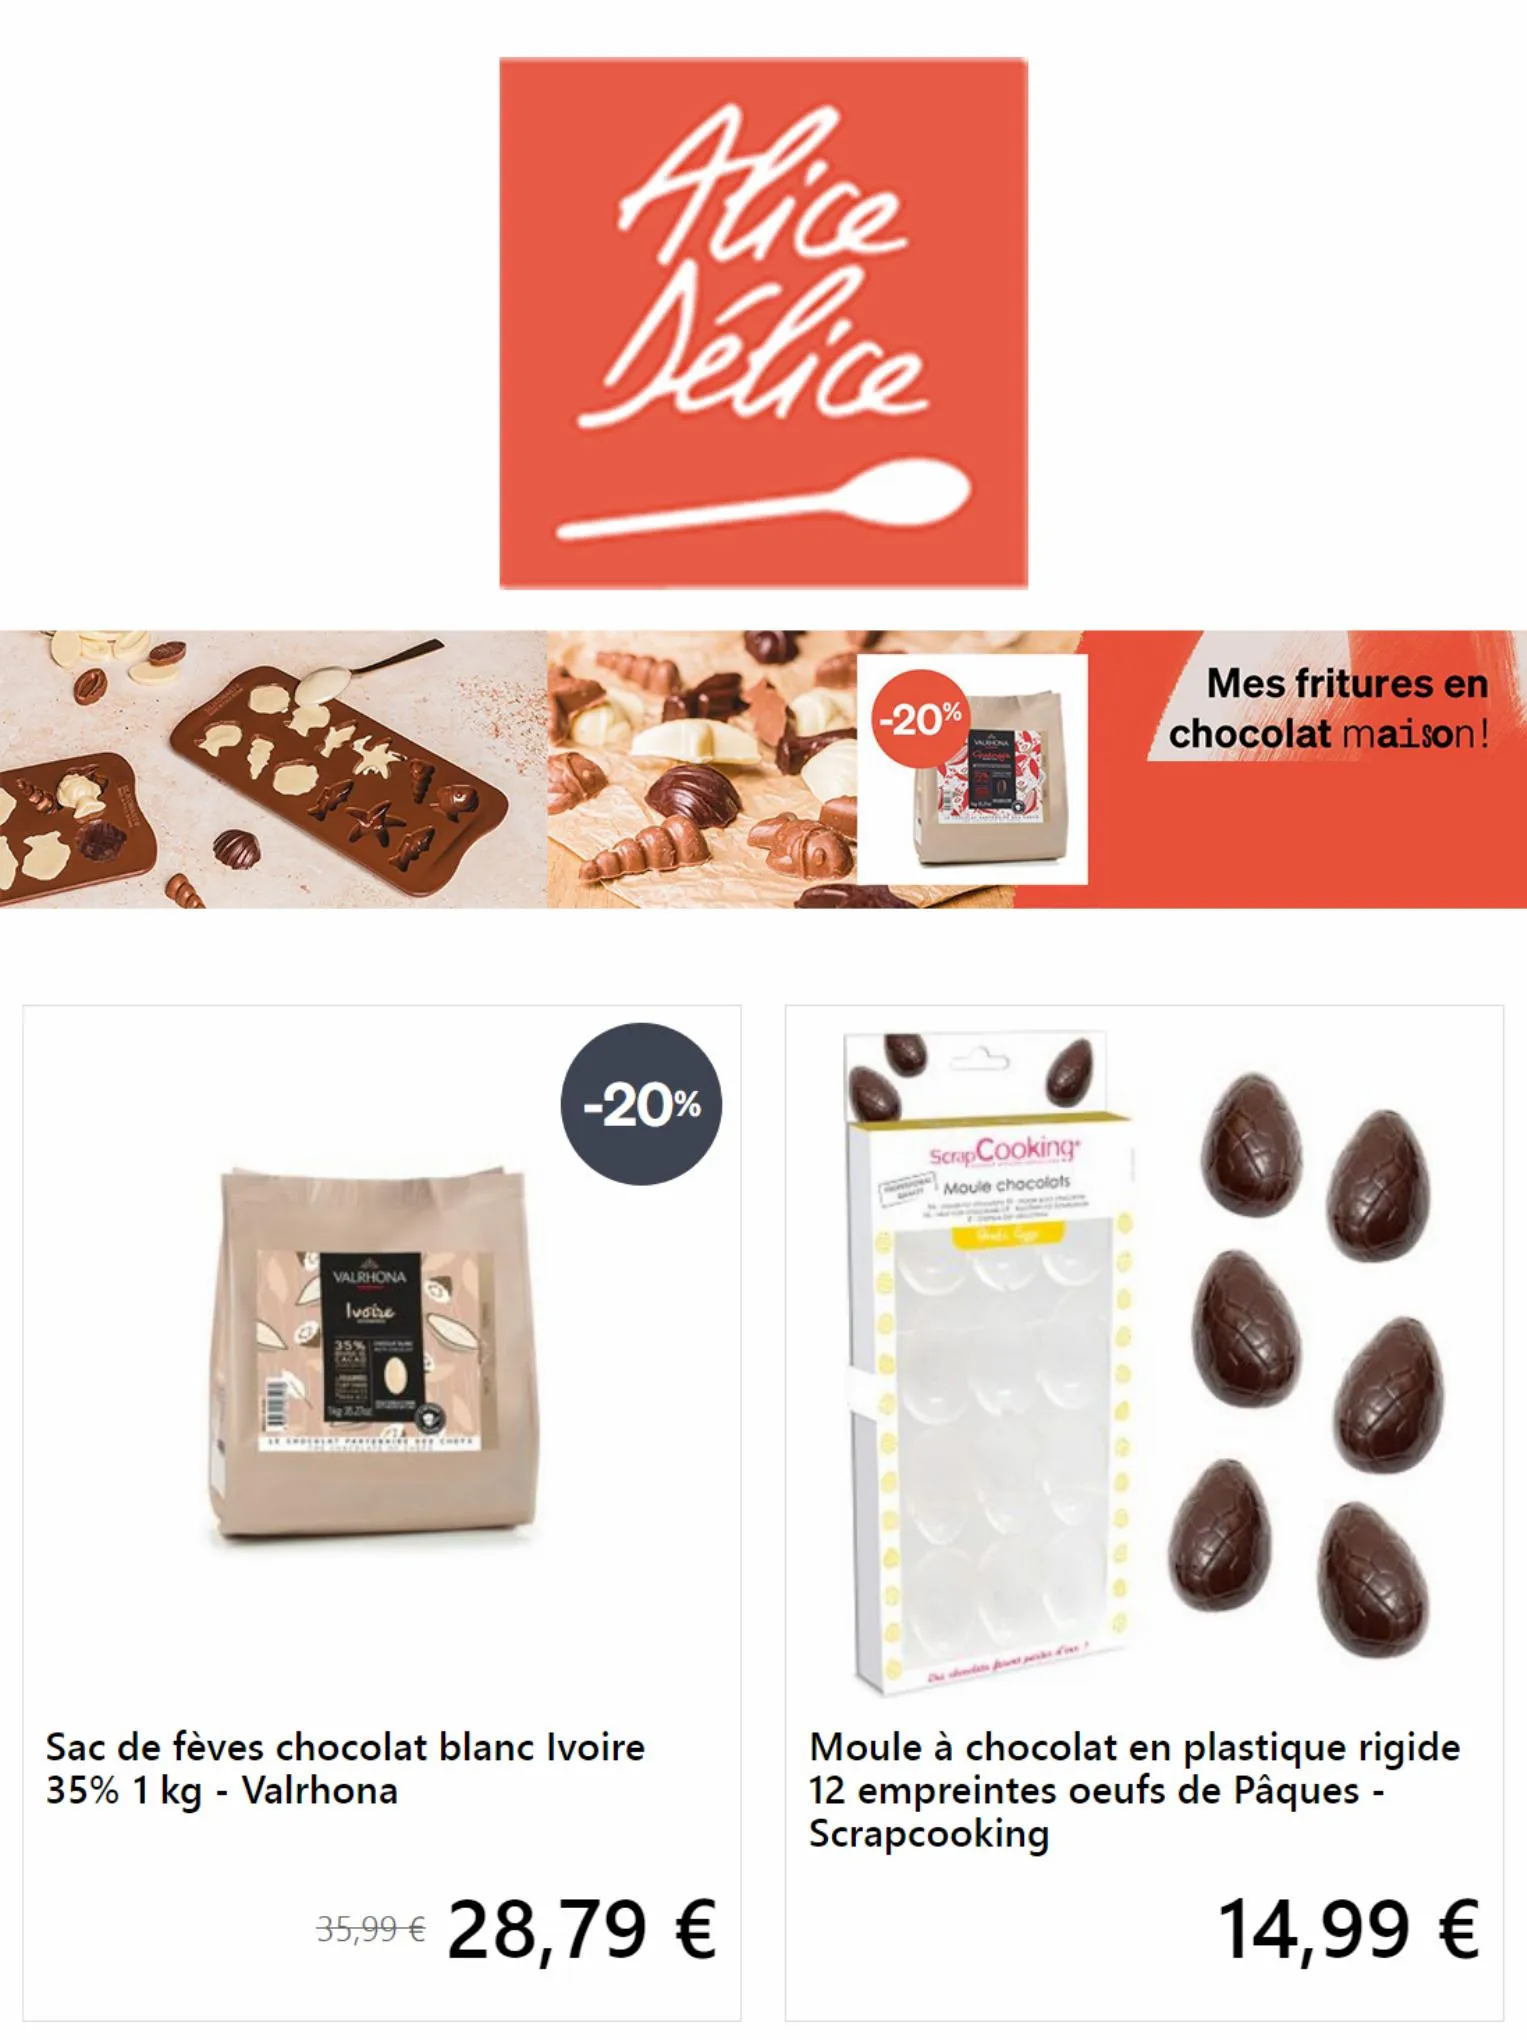 Catalogue Mes fritures en chocolat maison!, page 00001